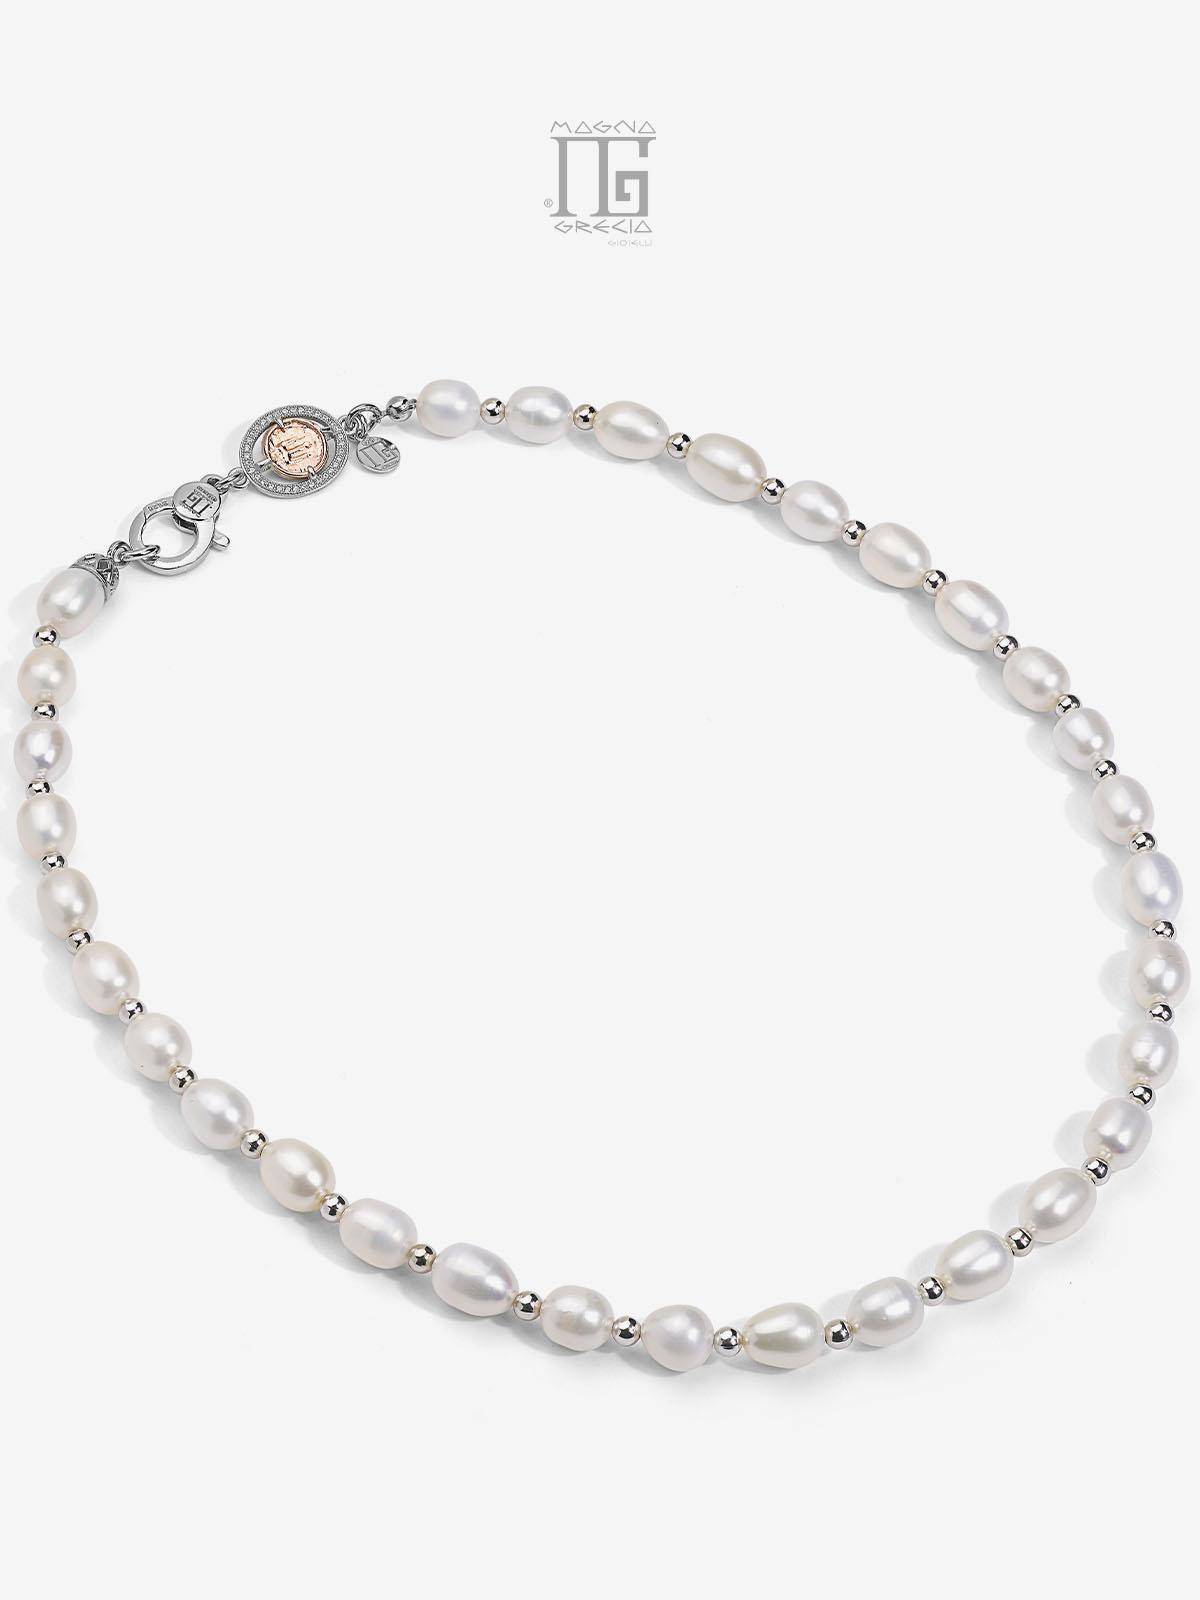 Collar de perlas naturales de agua dulce y estateros de plata Código MGK 4069 V